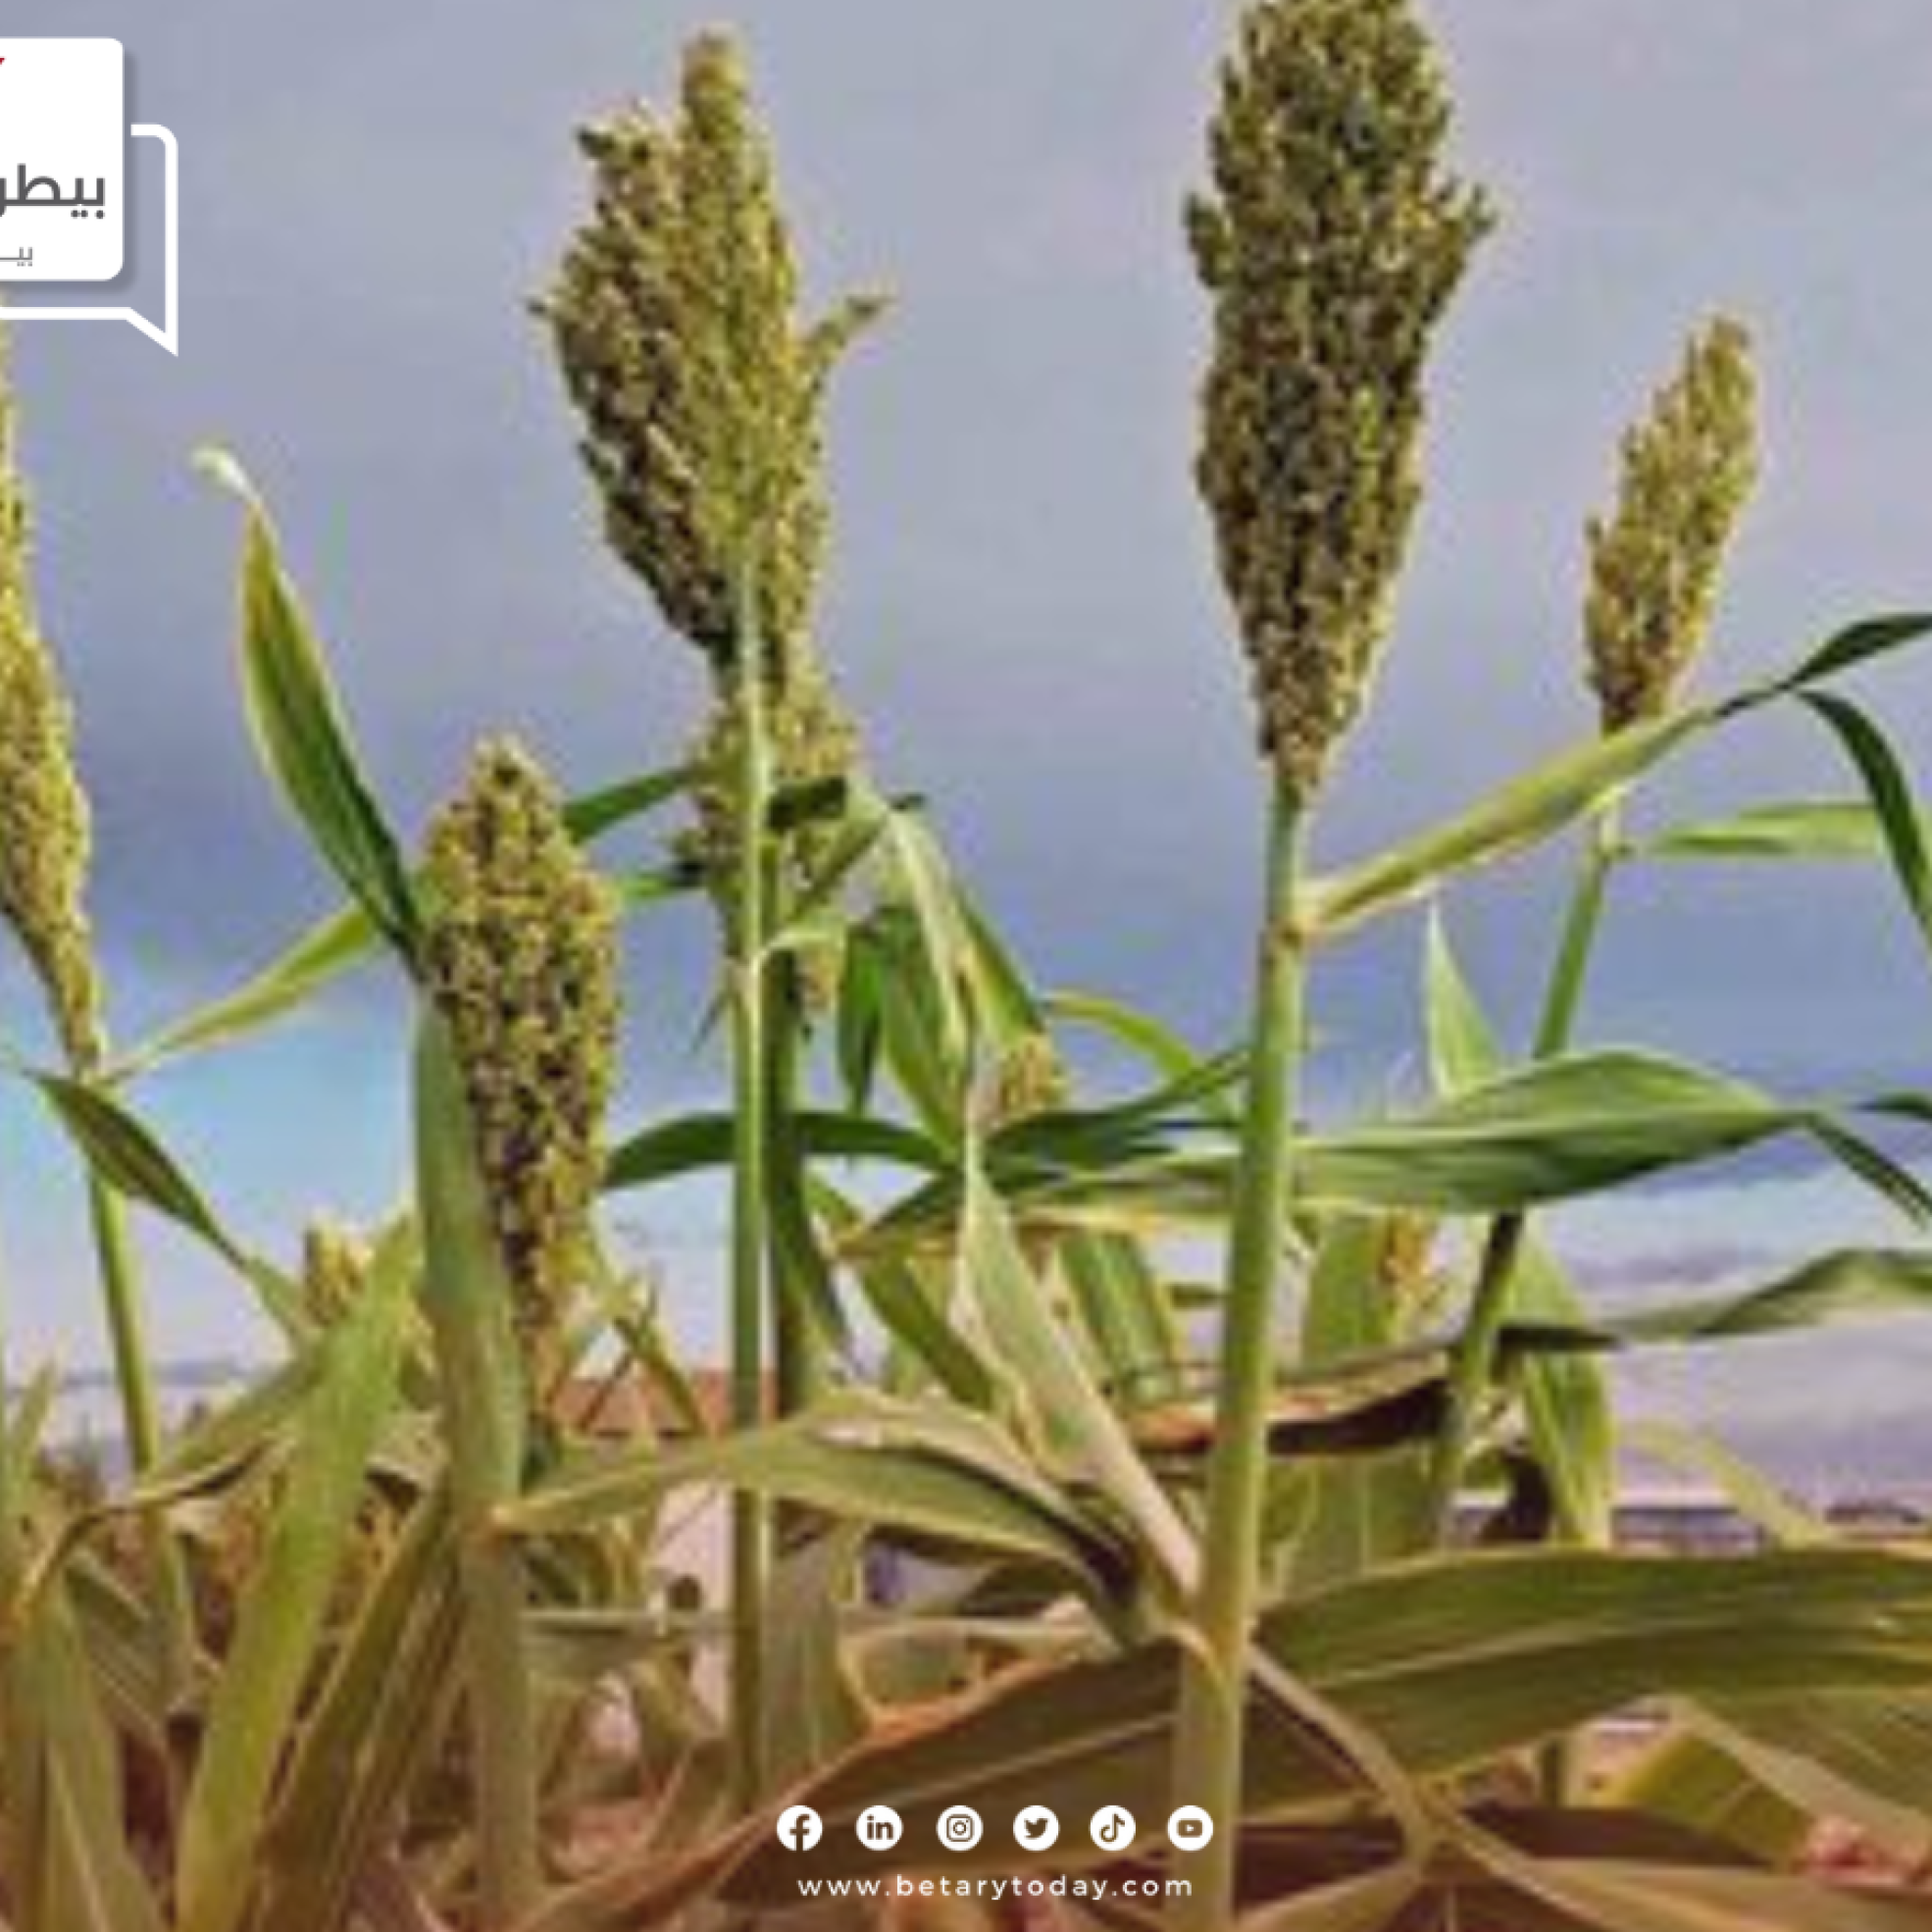 الزراعة تصدر نشرة توصيات لمزارعي الذرة الرفيعة في شهر مايو